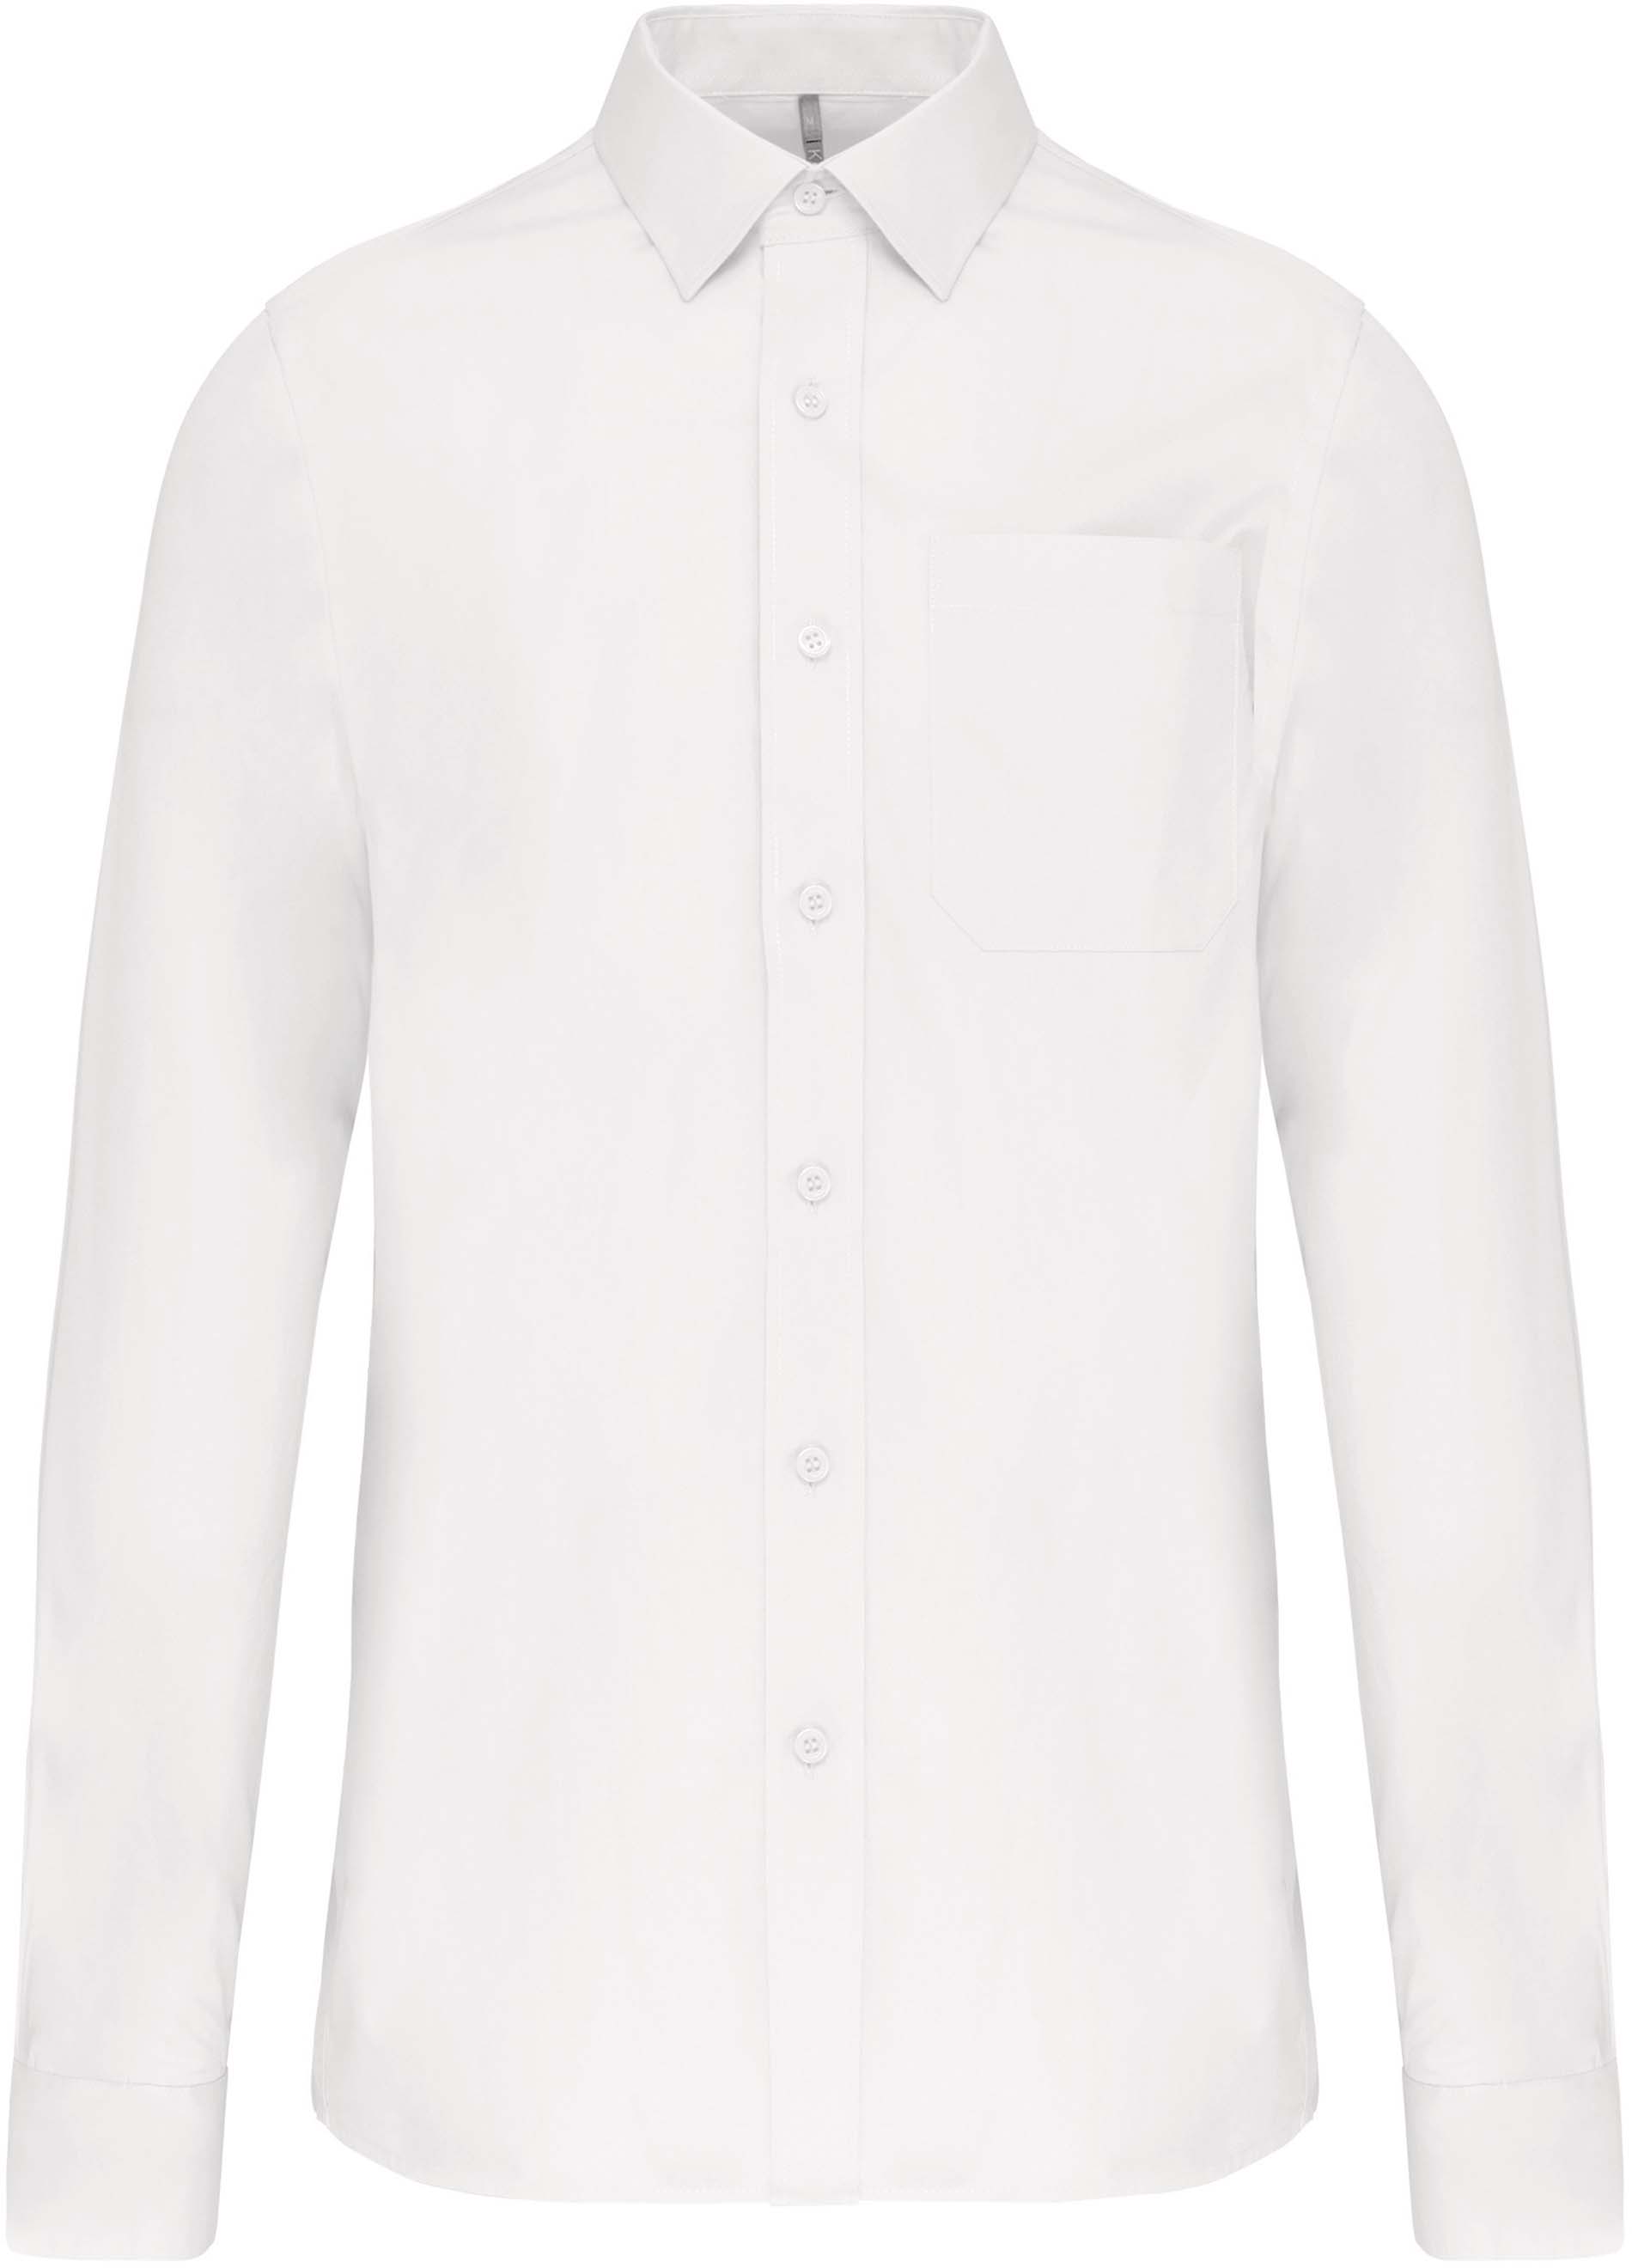 Pánská košile s dlouhým rukávem Velikost: XS, Barva: white, Rozměr: 72,50/51